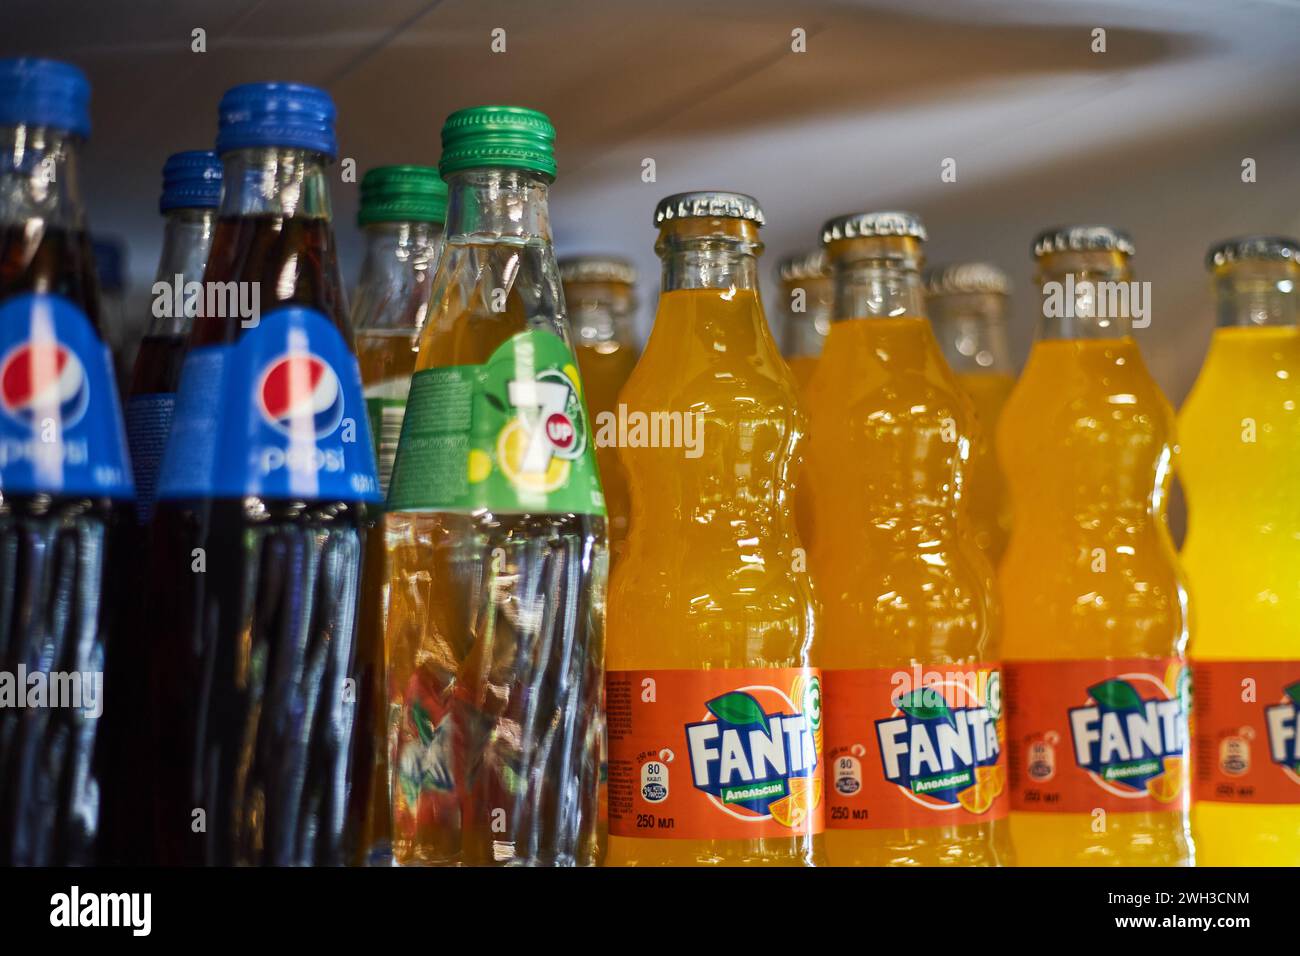 Pepsi, 7 in su, Fanta. Bottiglie di bibita in vetro di marca concorrente su un ripiano del frigorifero presso il supermercato. Bevande, bevande analcoliche gassate più diffuse Foto Stock